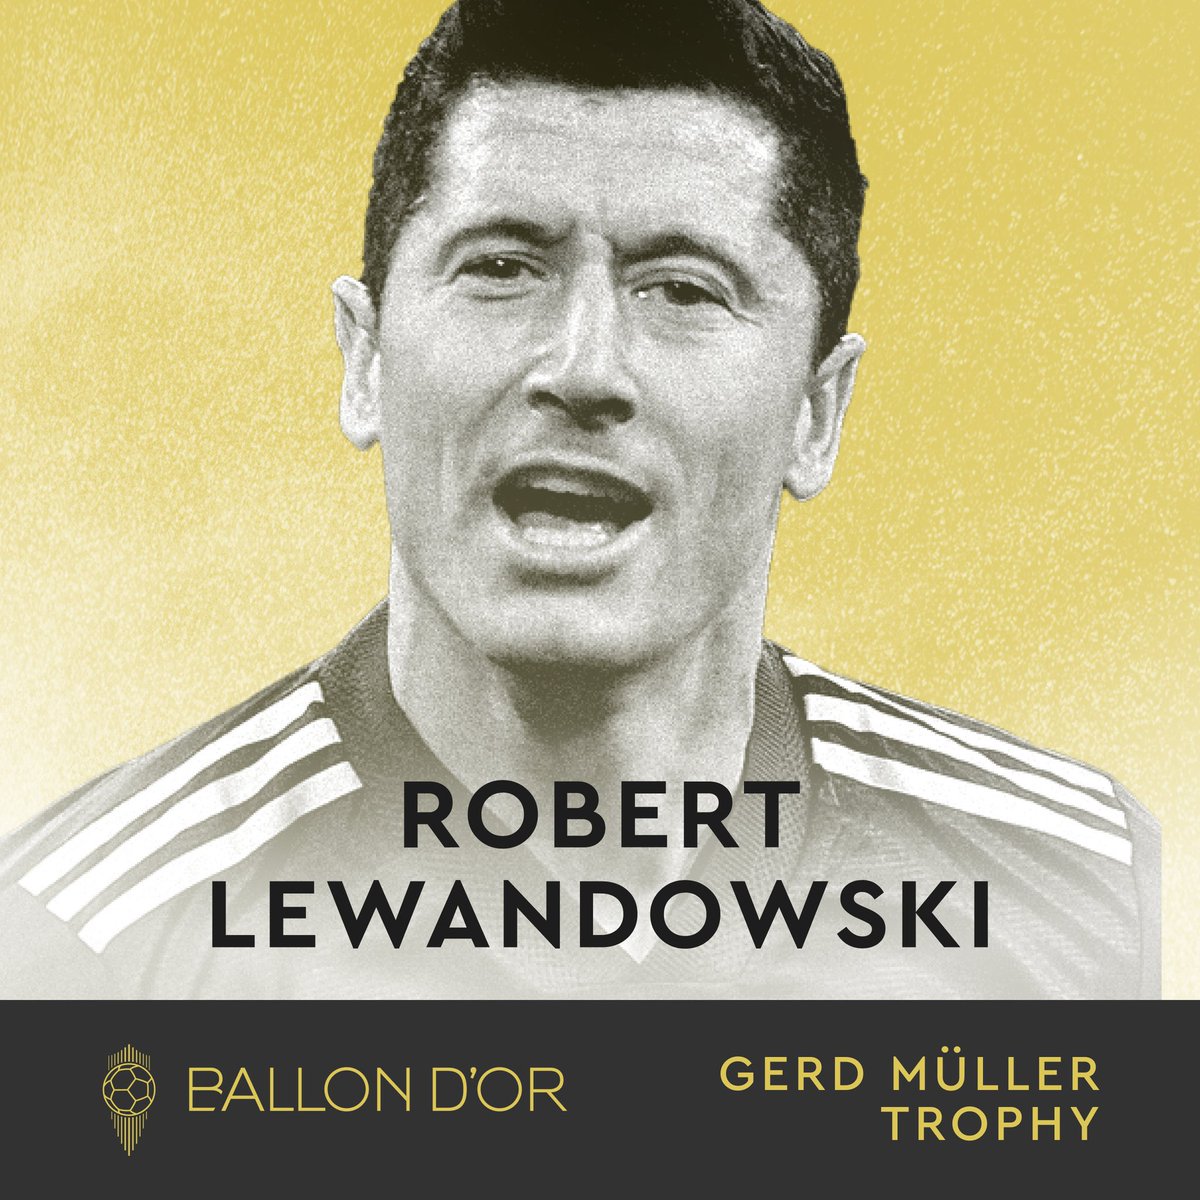 .@lewy_official wins the Gerd Müller Award! 

The best striker of the year!

#trophéeGerdMuller | #BallonDor  | #Radio4UG